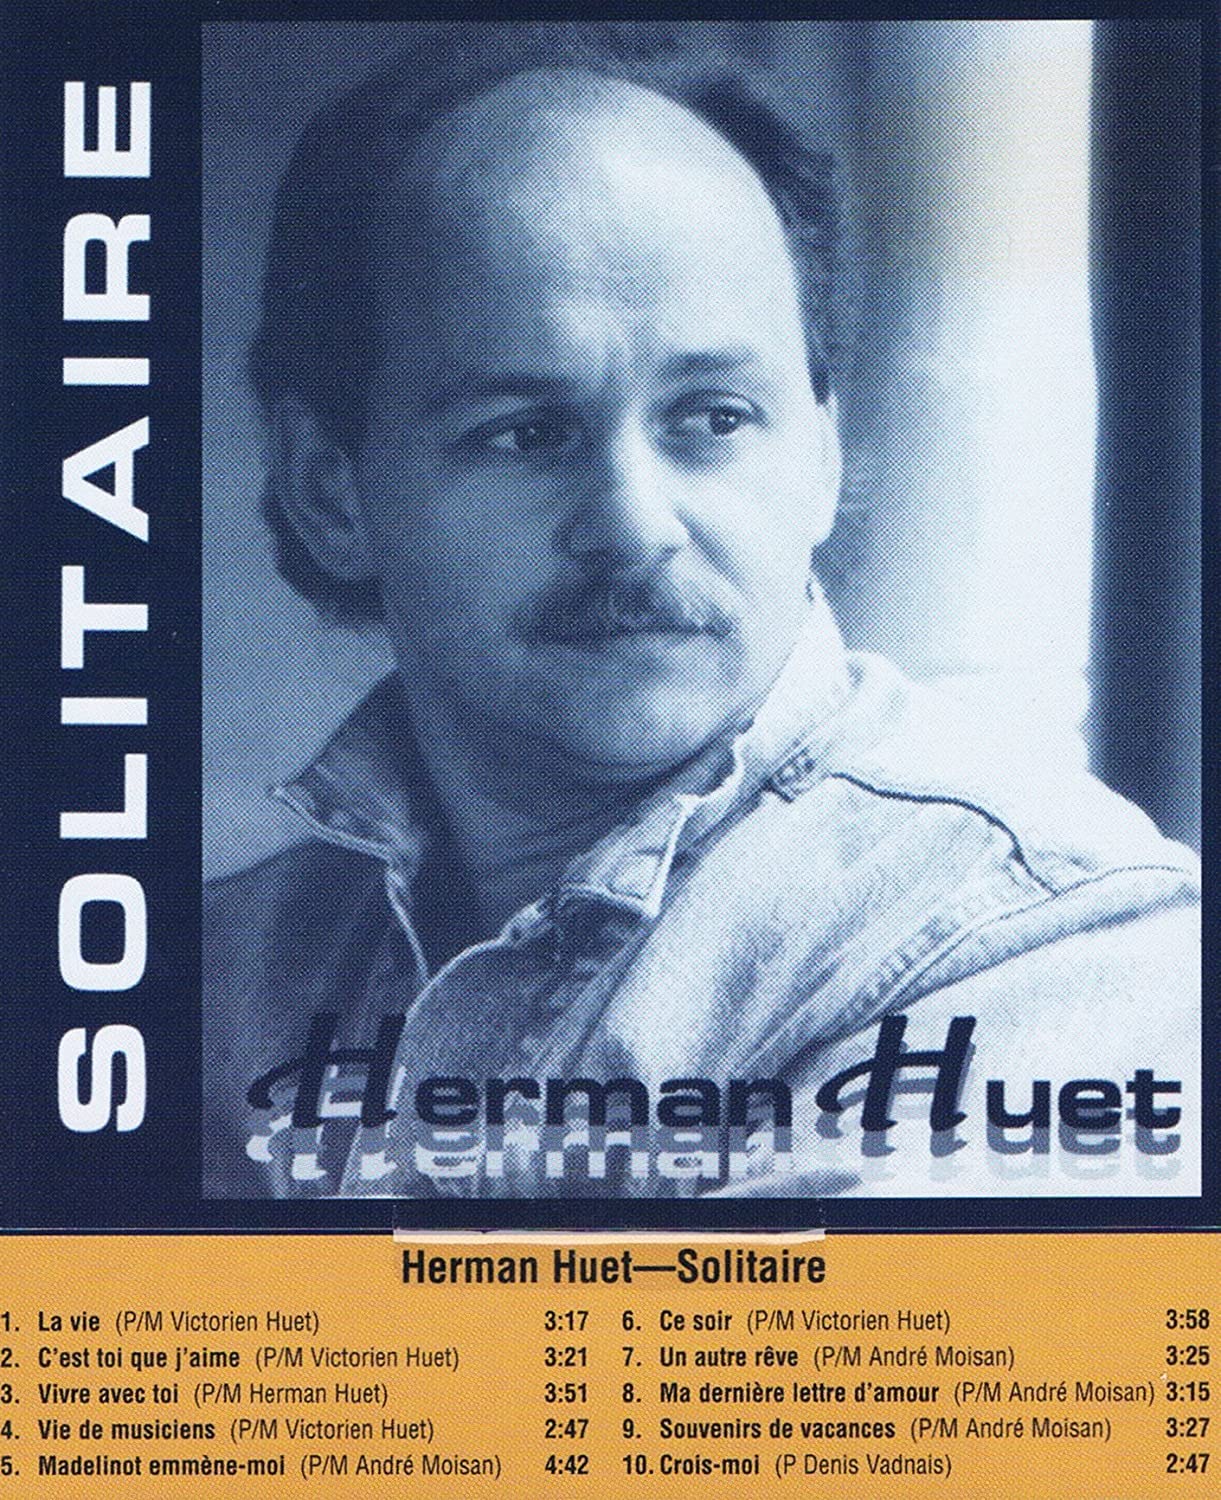 Herman Huet - Solitaire [Audio CD] Herman Huet